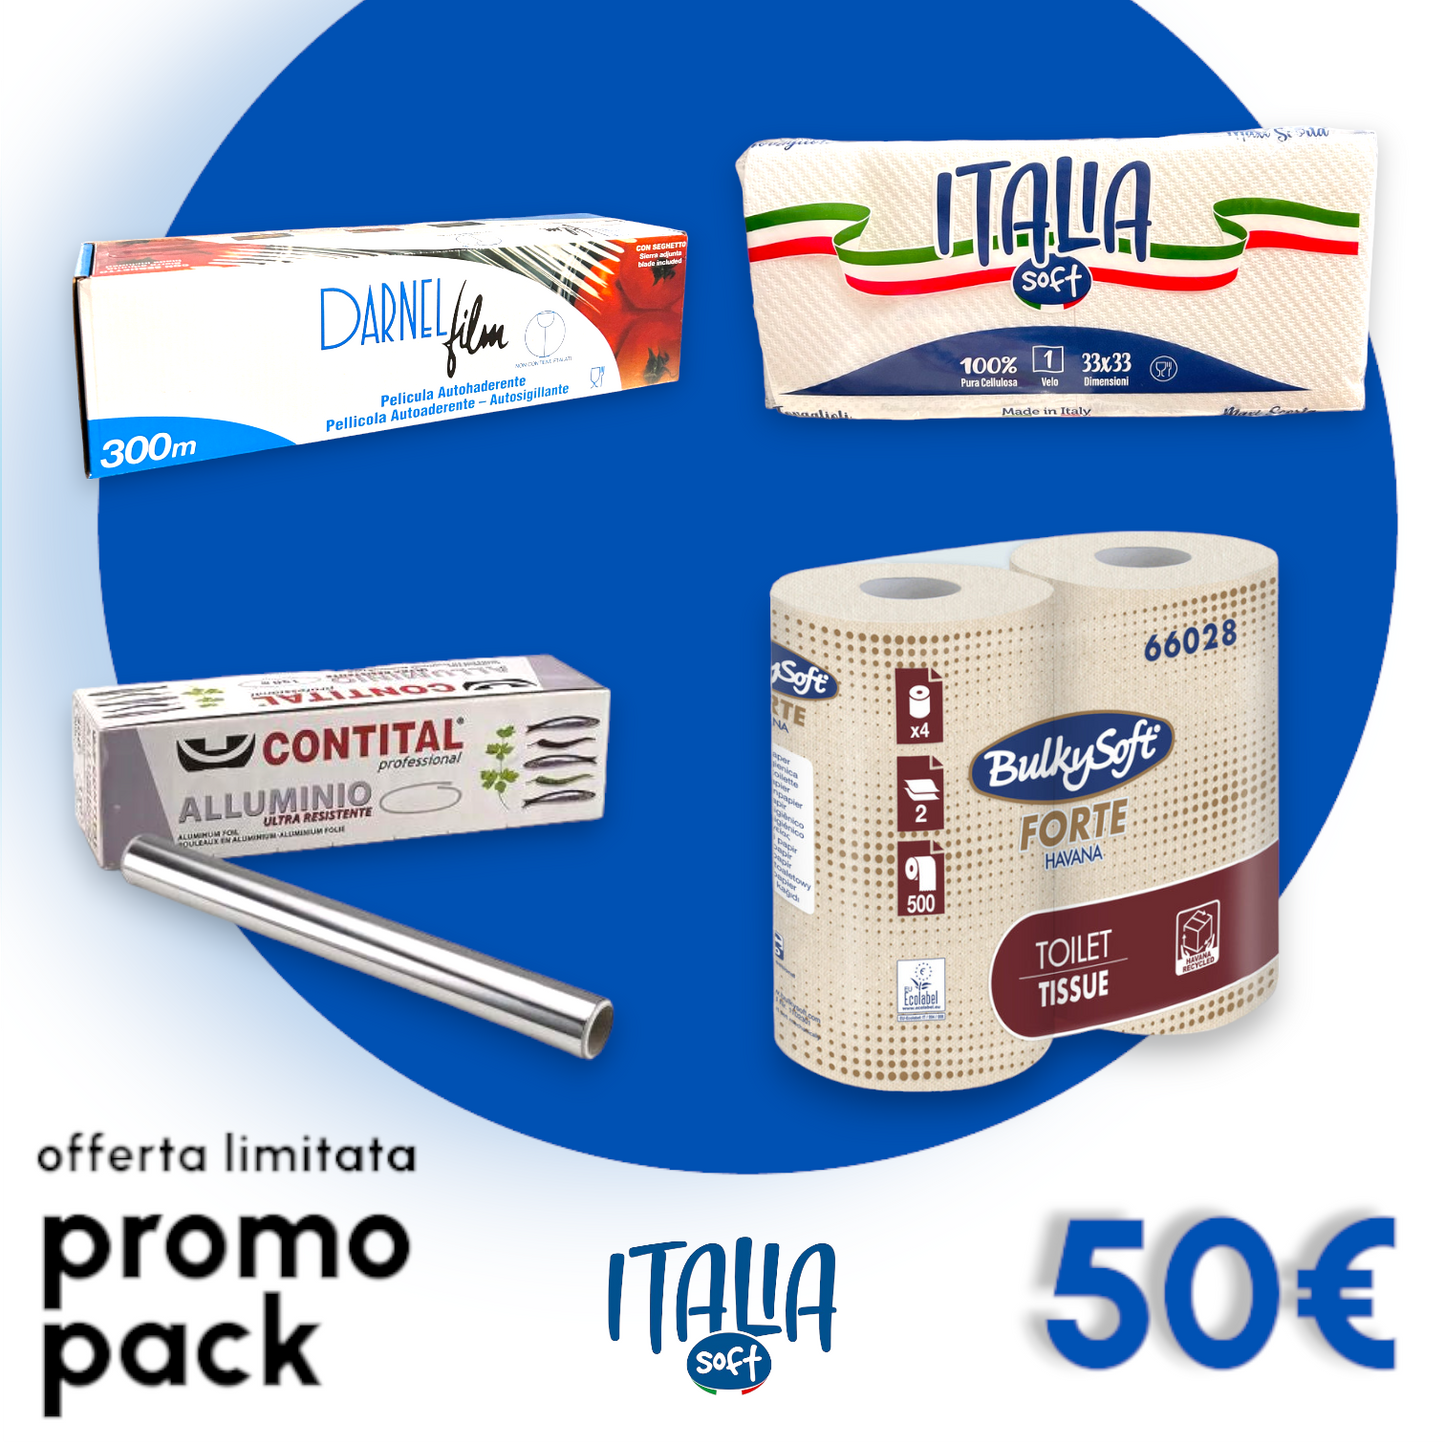 Promo Pack Italia Soft